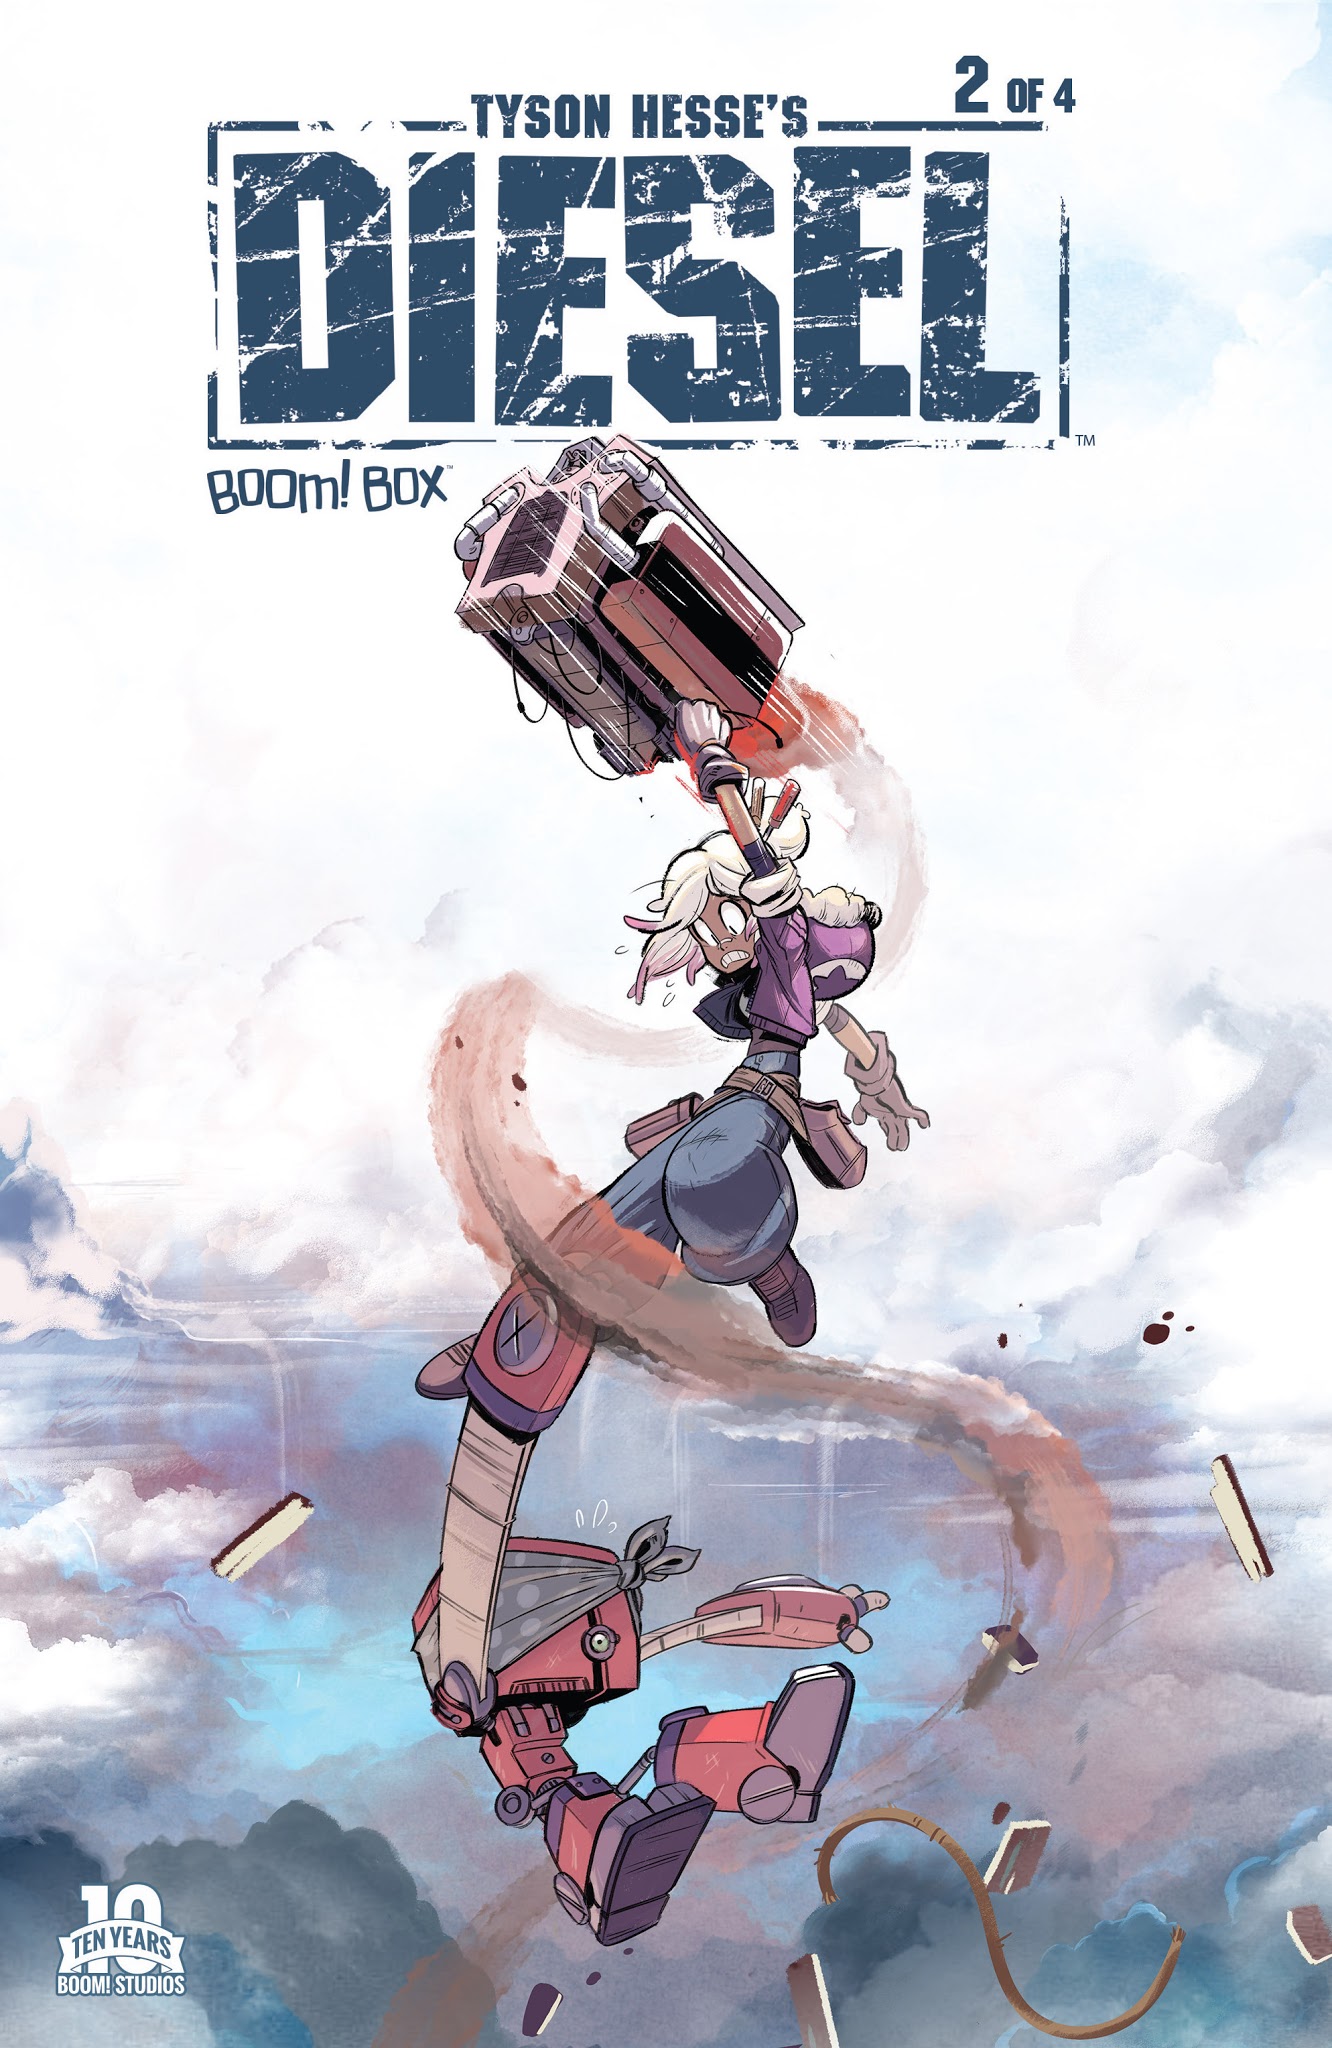 Read online Tyson Hesse's Diesel comic -  Issue #2 - 1